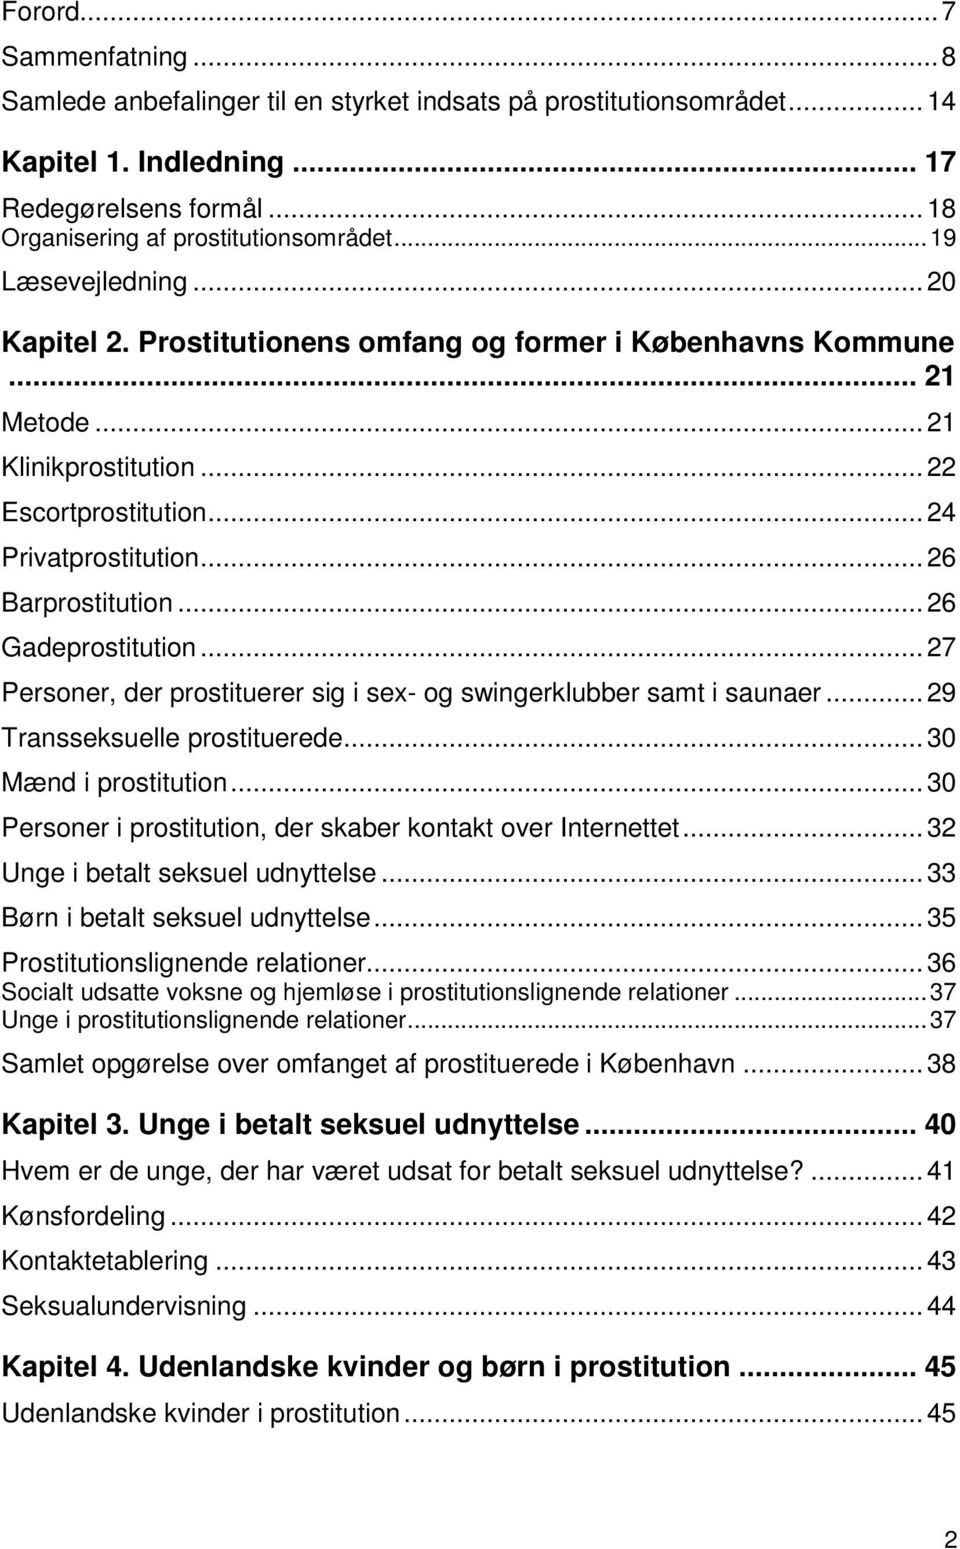 ..26 Gadeprostitution...27 Personer, der prostituerer sig i sex- og swingerklubber samt i saunaer...29 Transseksuelle prostituerede...30 Mænd i prostitution.